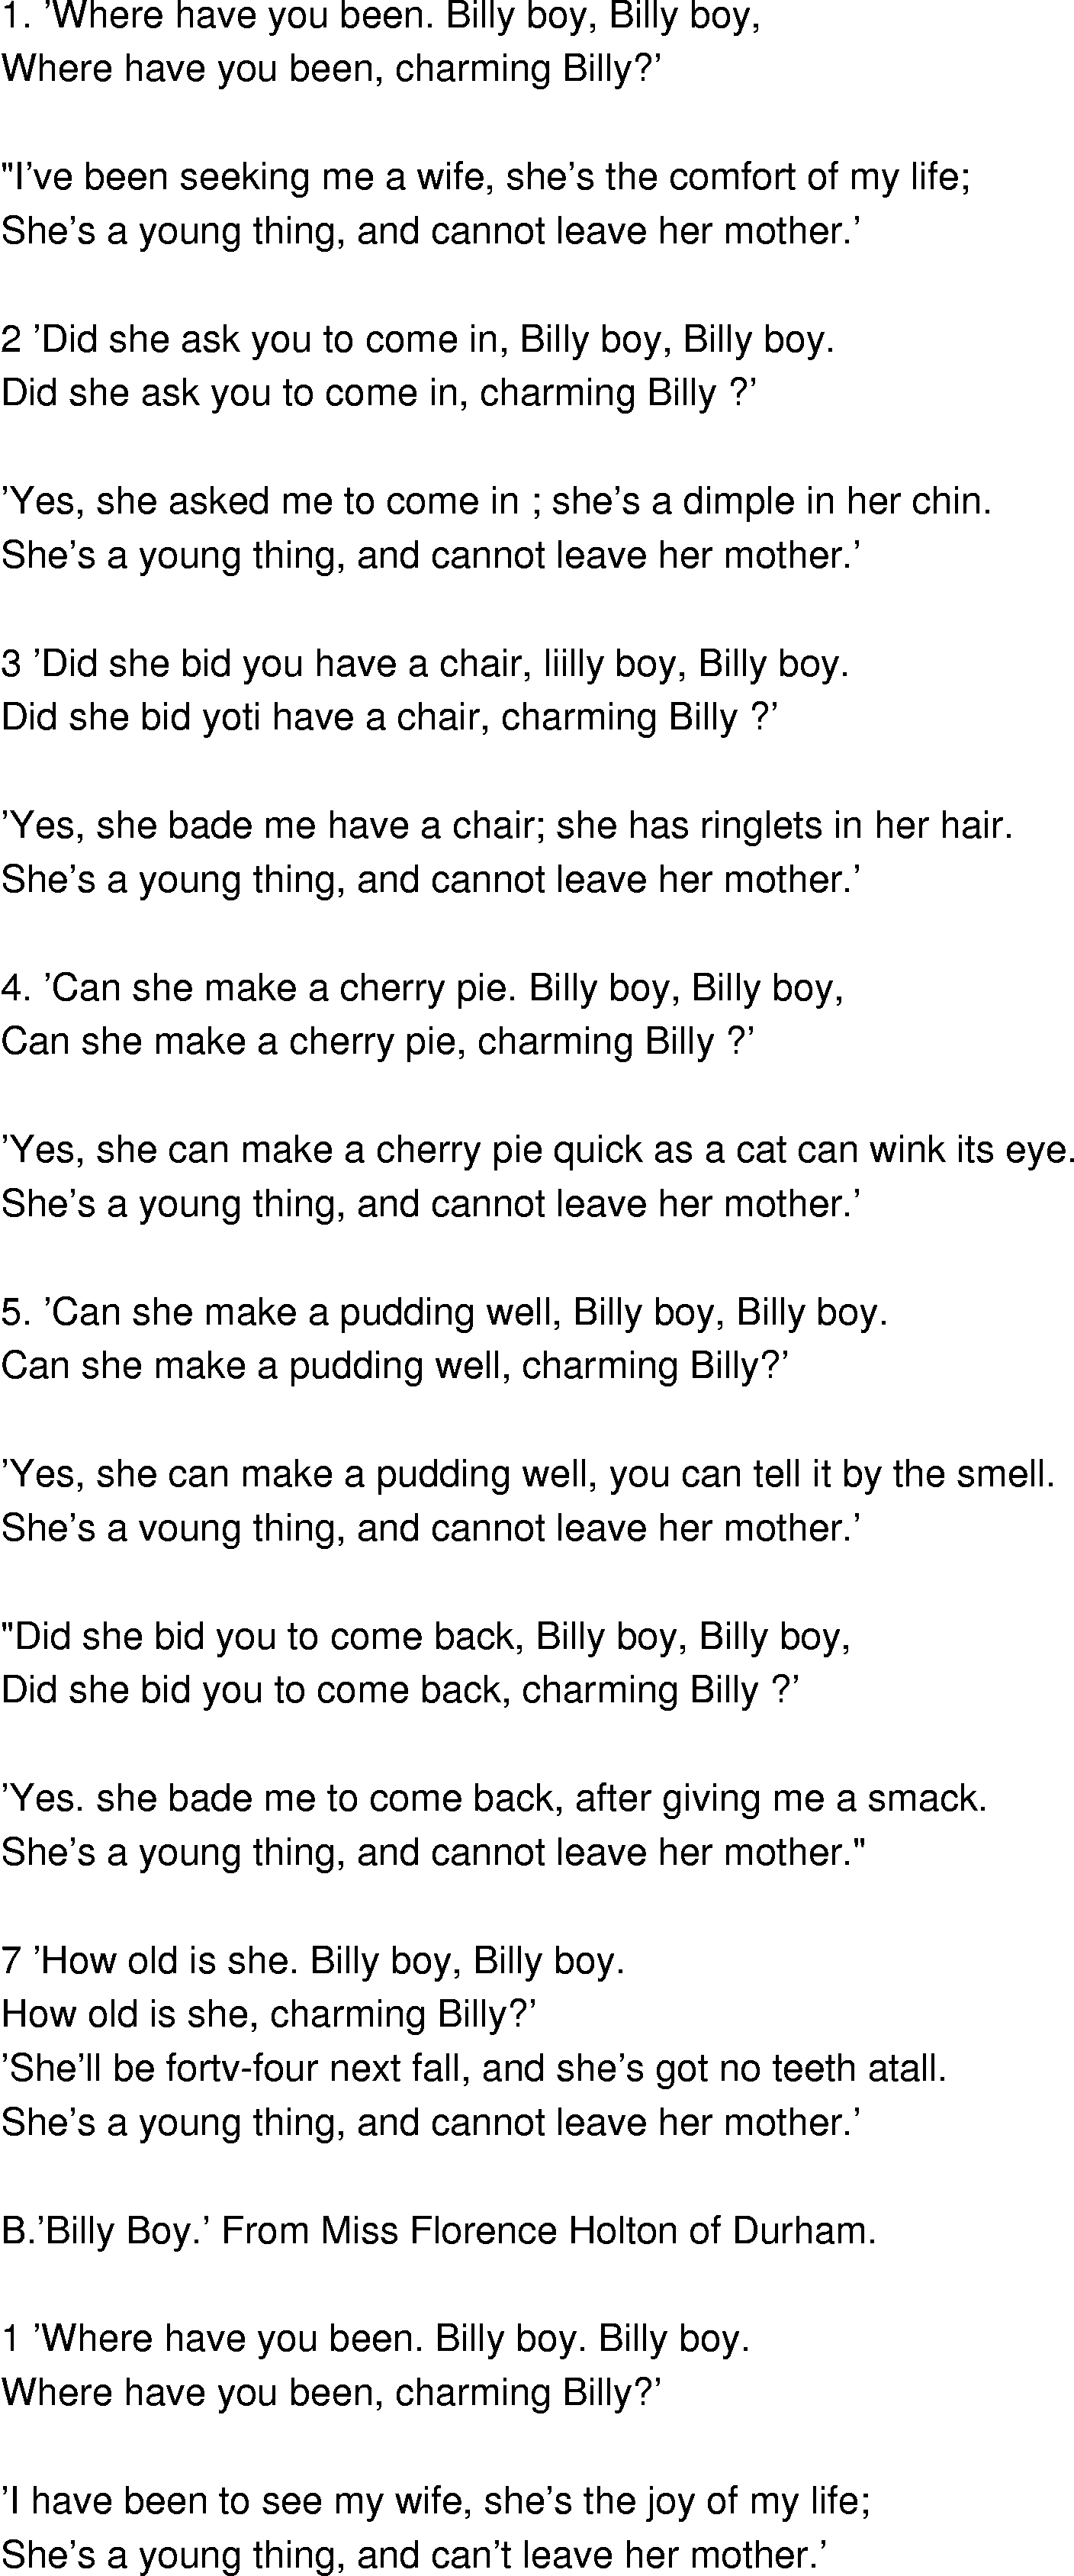 Old-Time (oldtimey) Song Lyrics - billy boy1